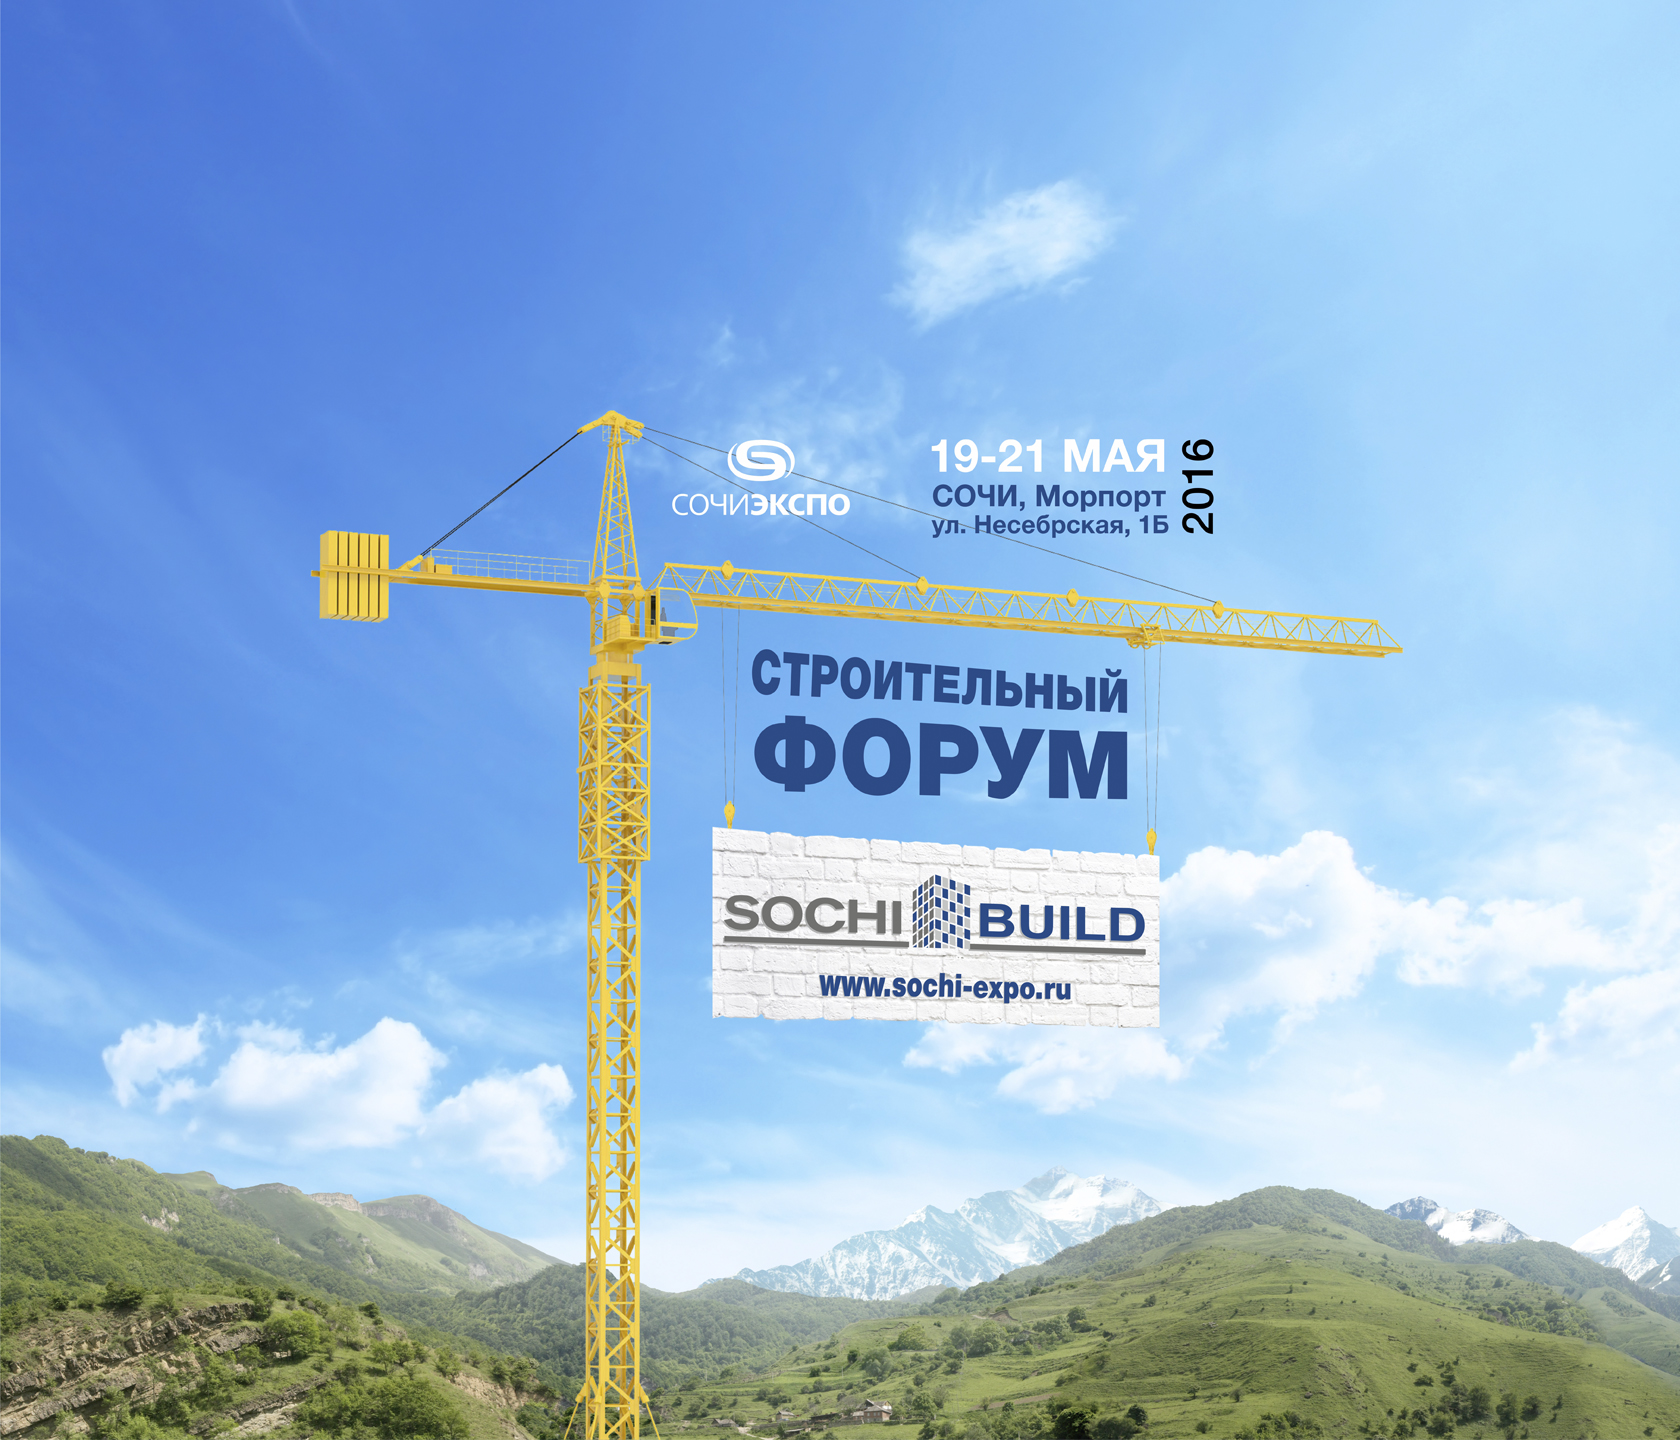 С 19 по 21 мая в Сочи пройдет строительный форум "SOCHI-BUILD"